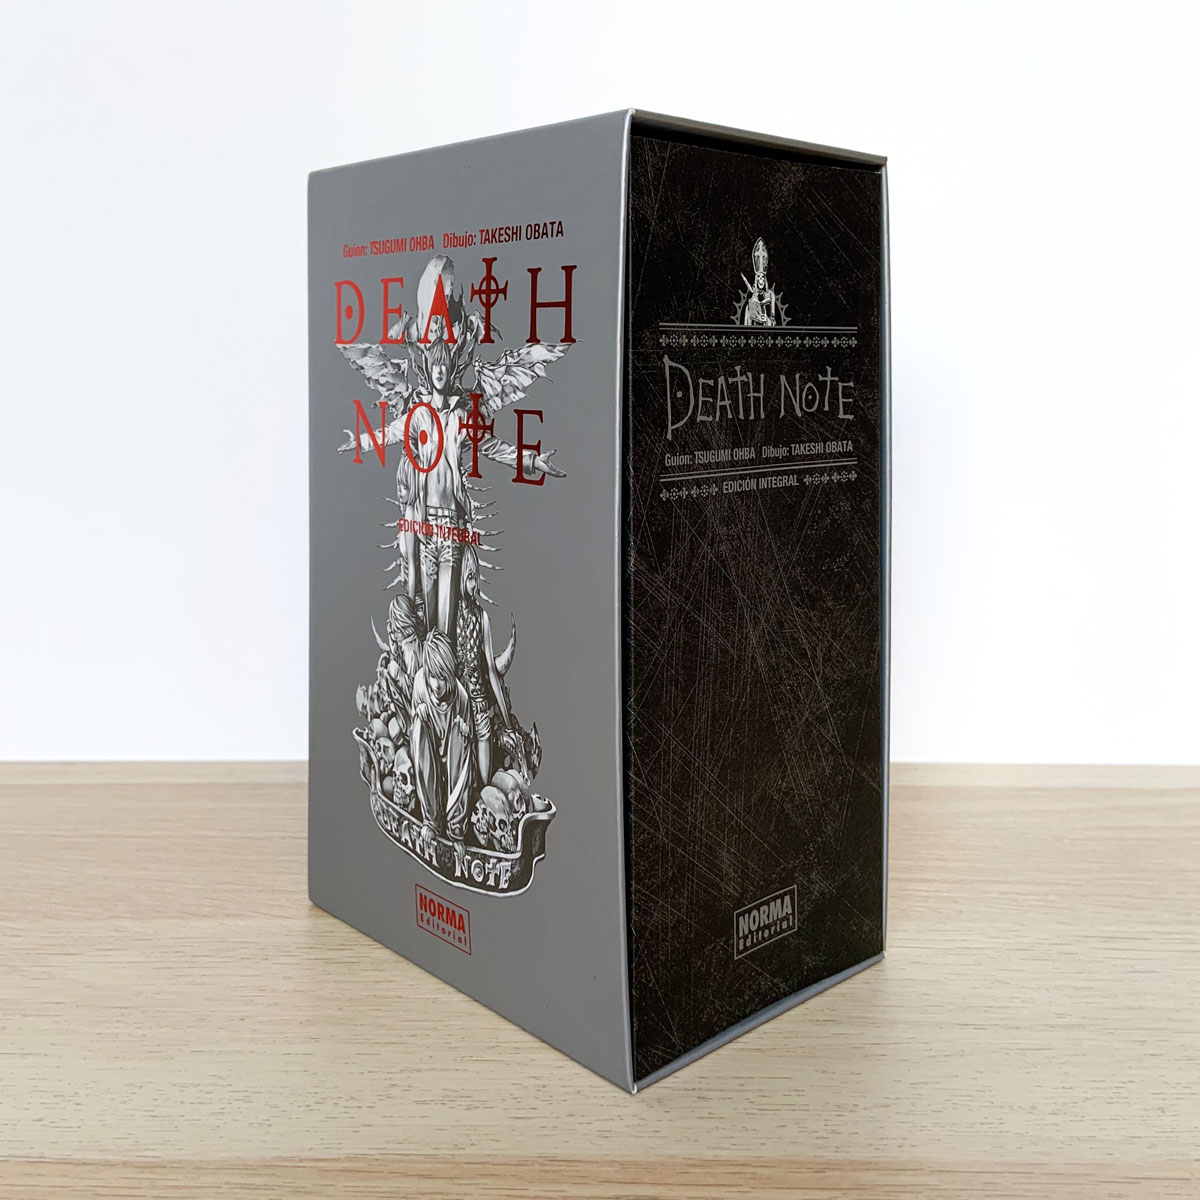 Death Note-Temporada 3 (Edición Integral) [Import]